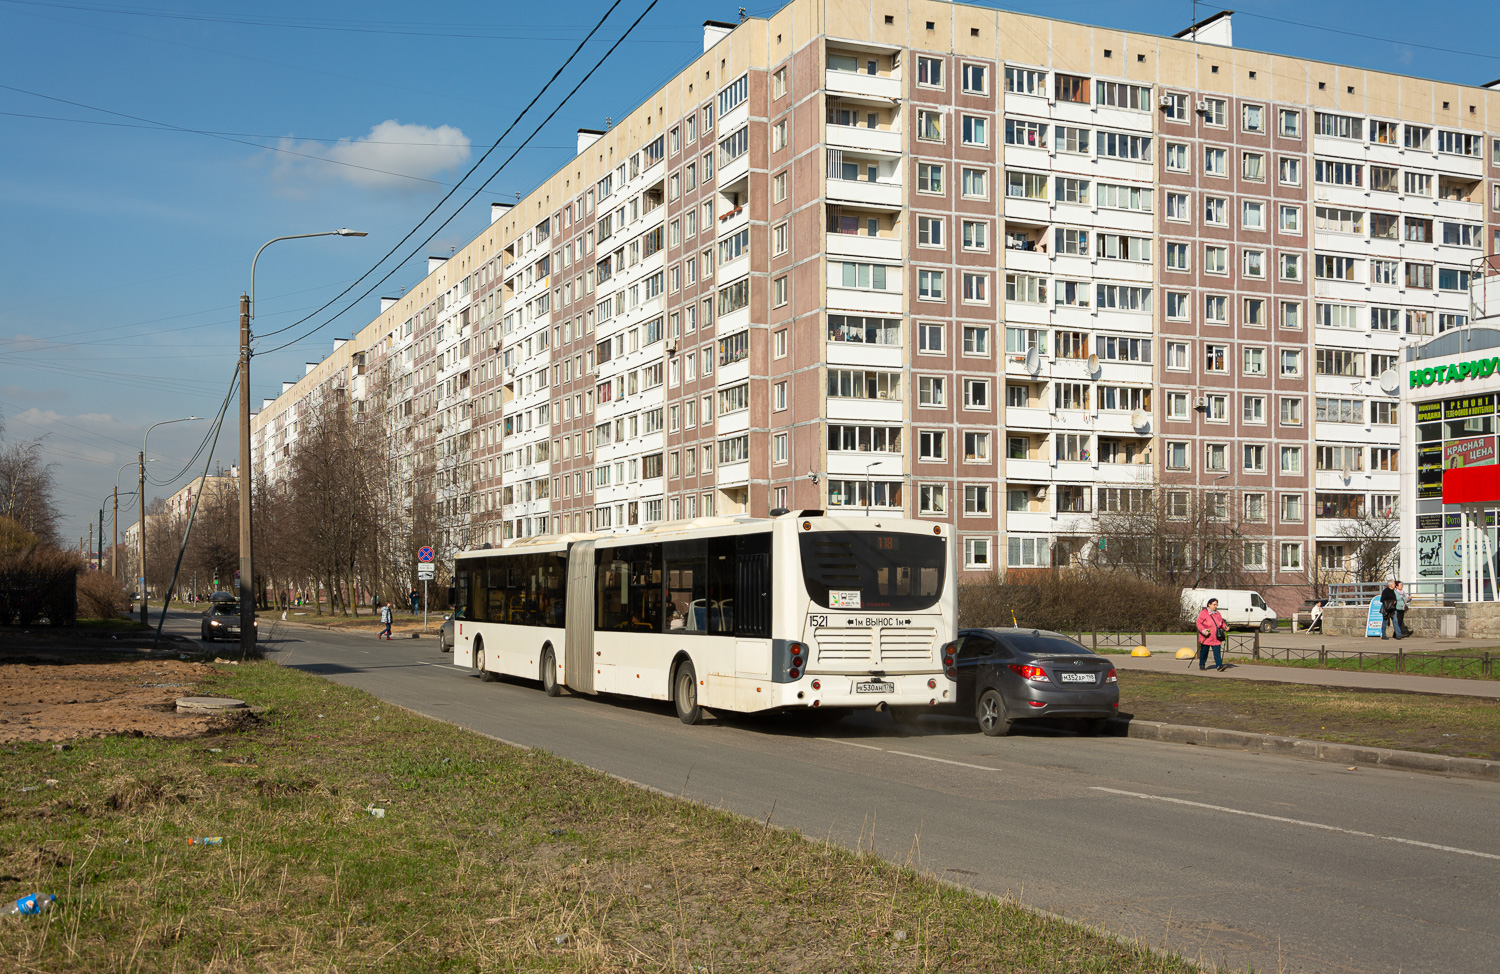 Saint Petersburg, Volgabus-6271.05 # 1521